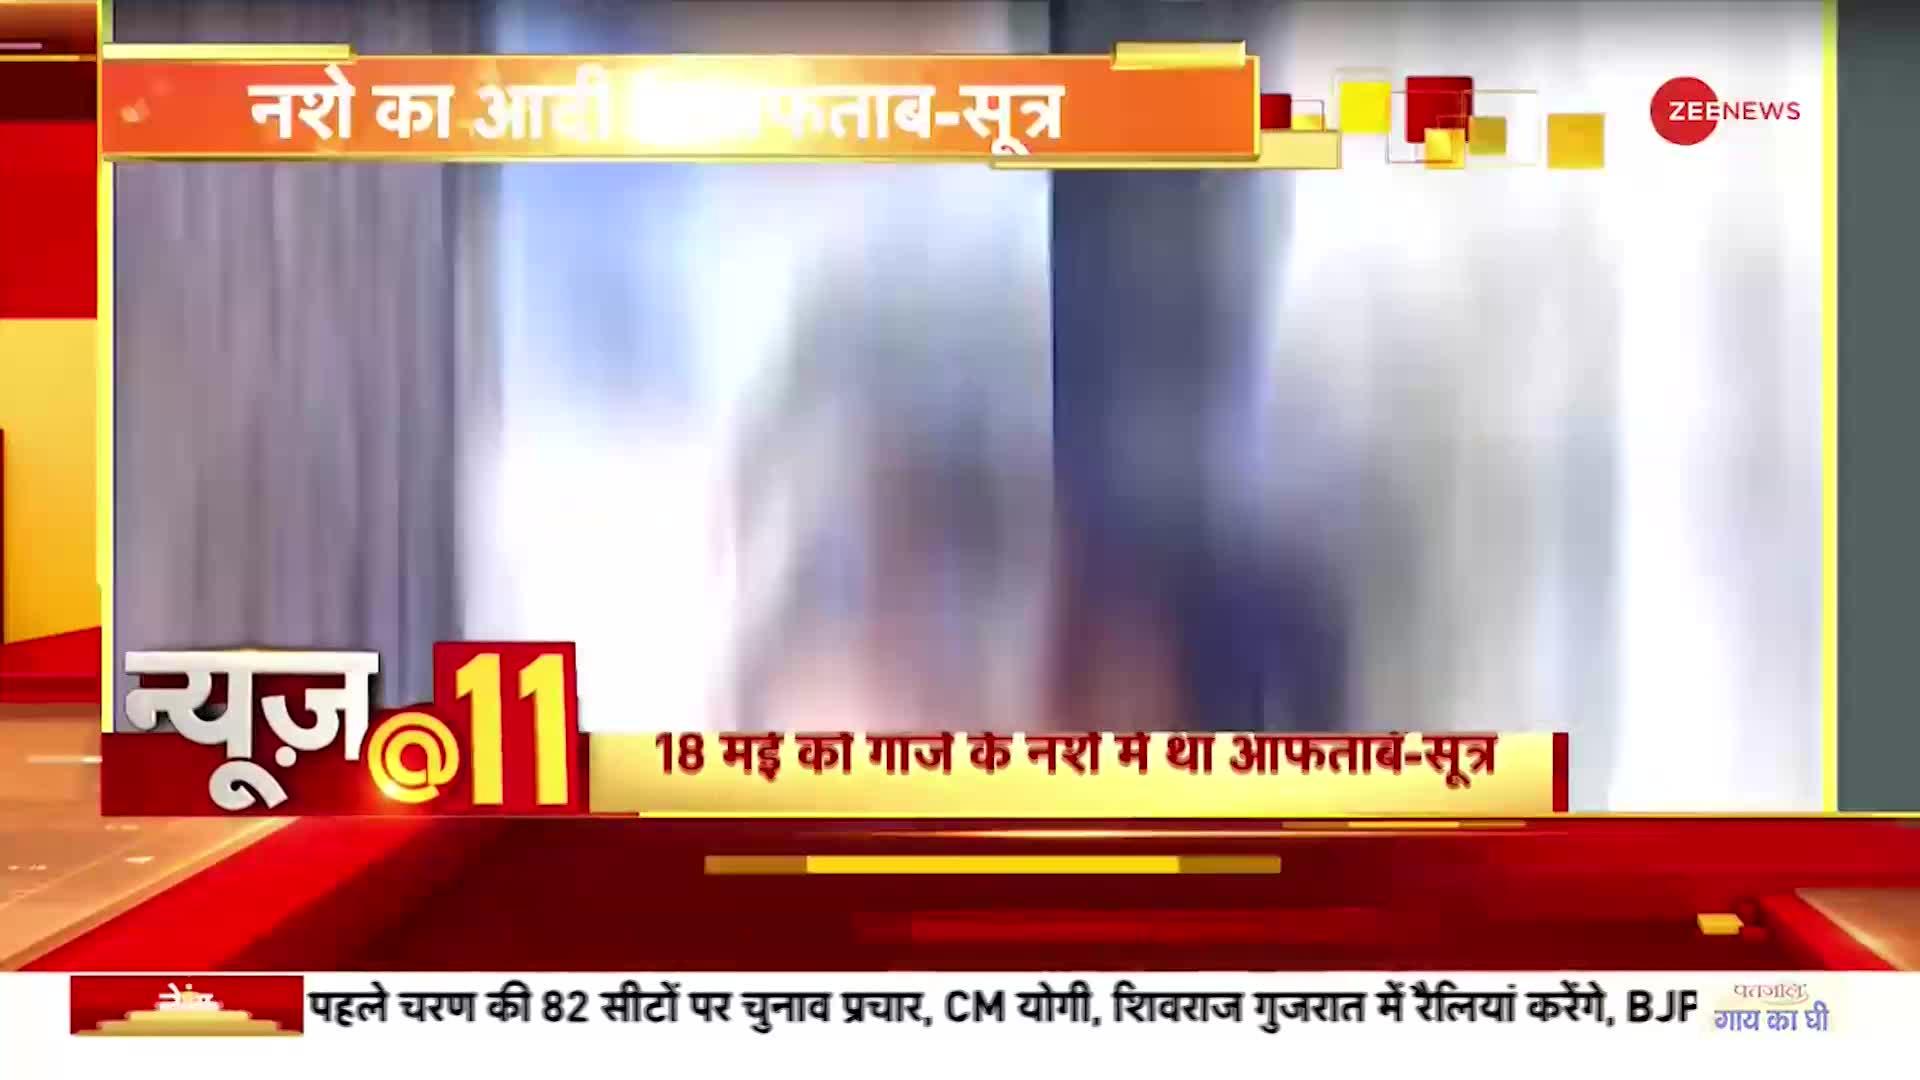 News@11: श्रद्धा हत्याकांड में सामने आया 'गांजा कनेक्शन'